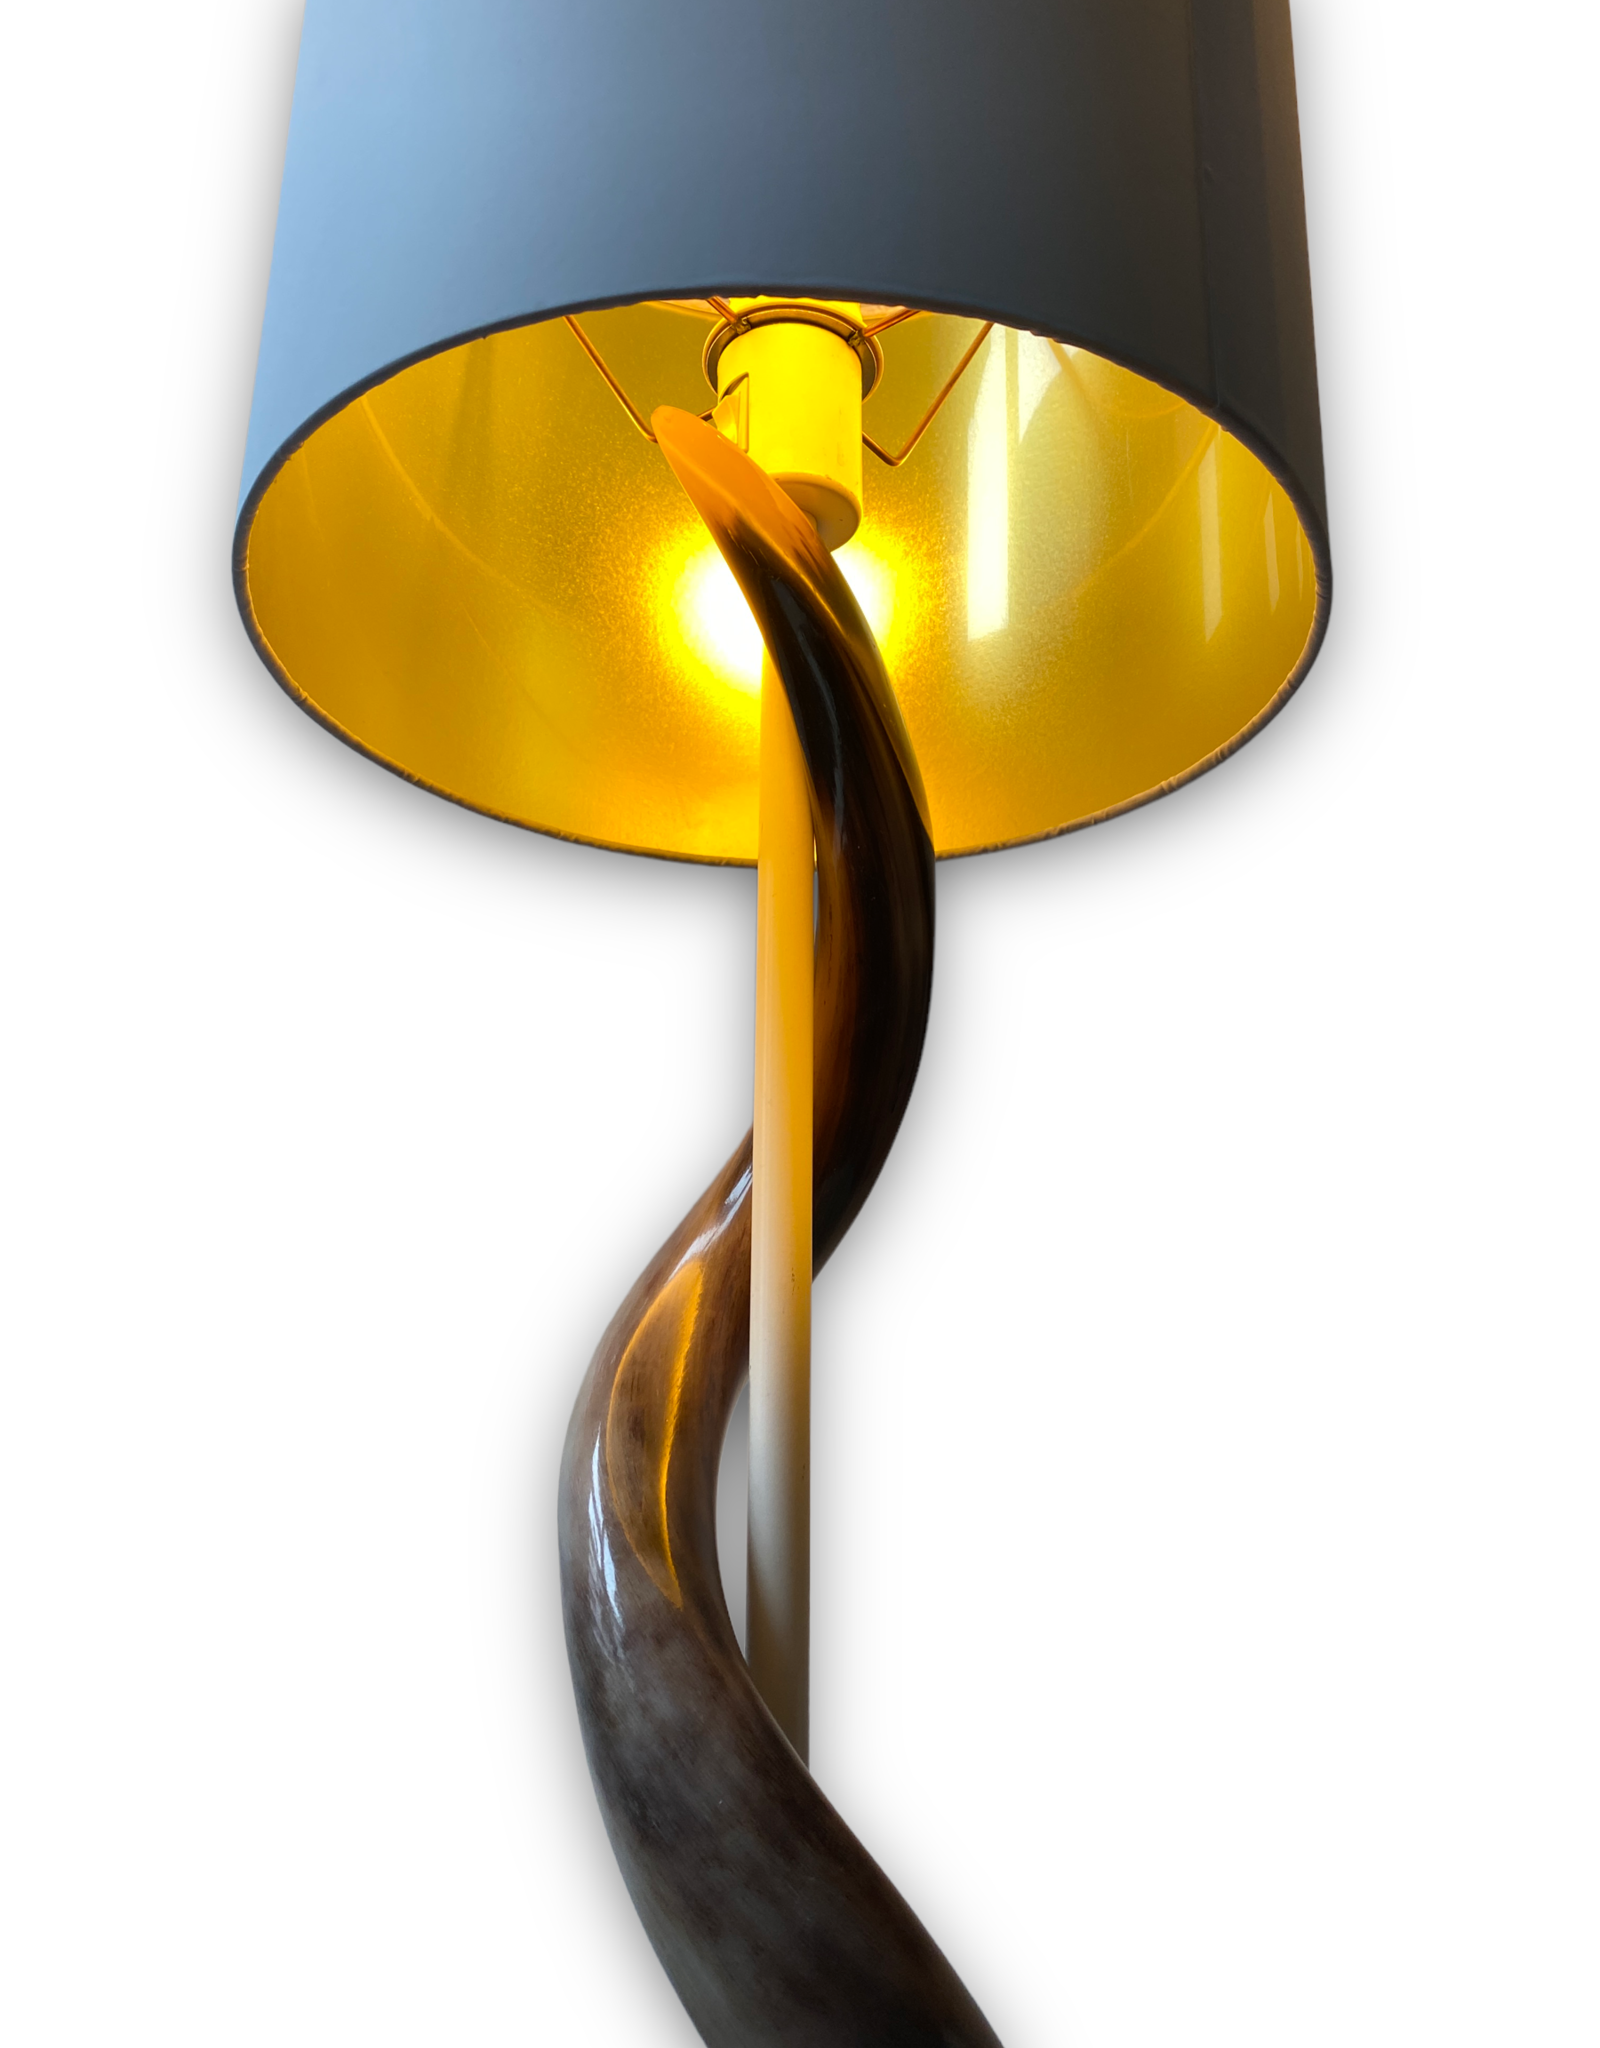 Kudu Horn Lamp XL White / Gold Lounge